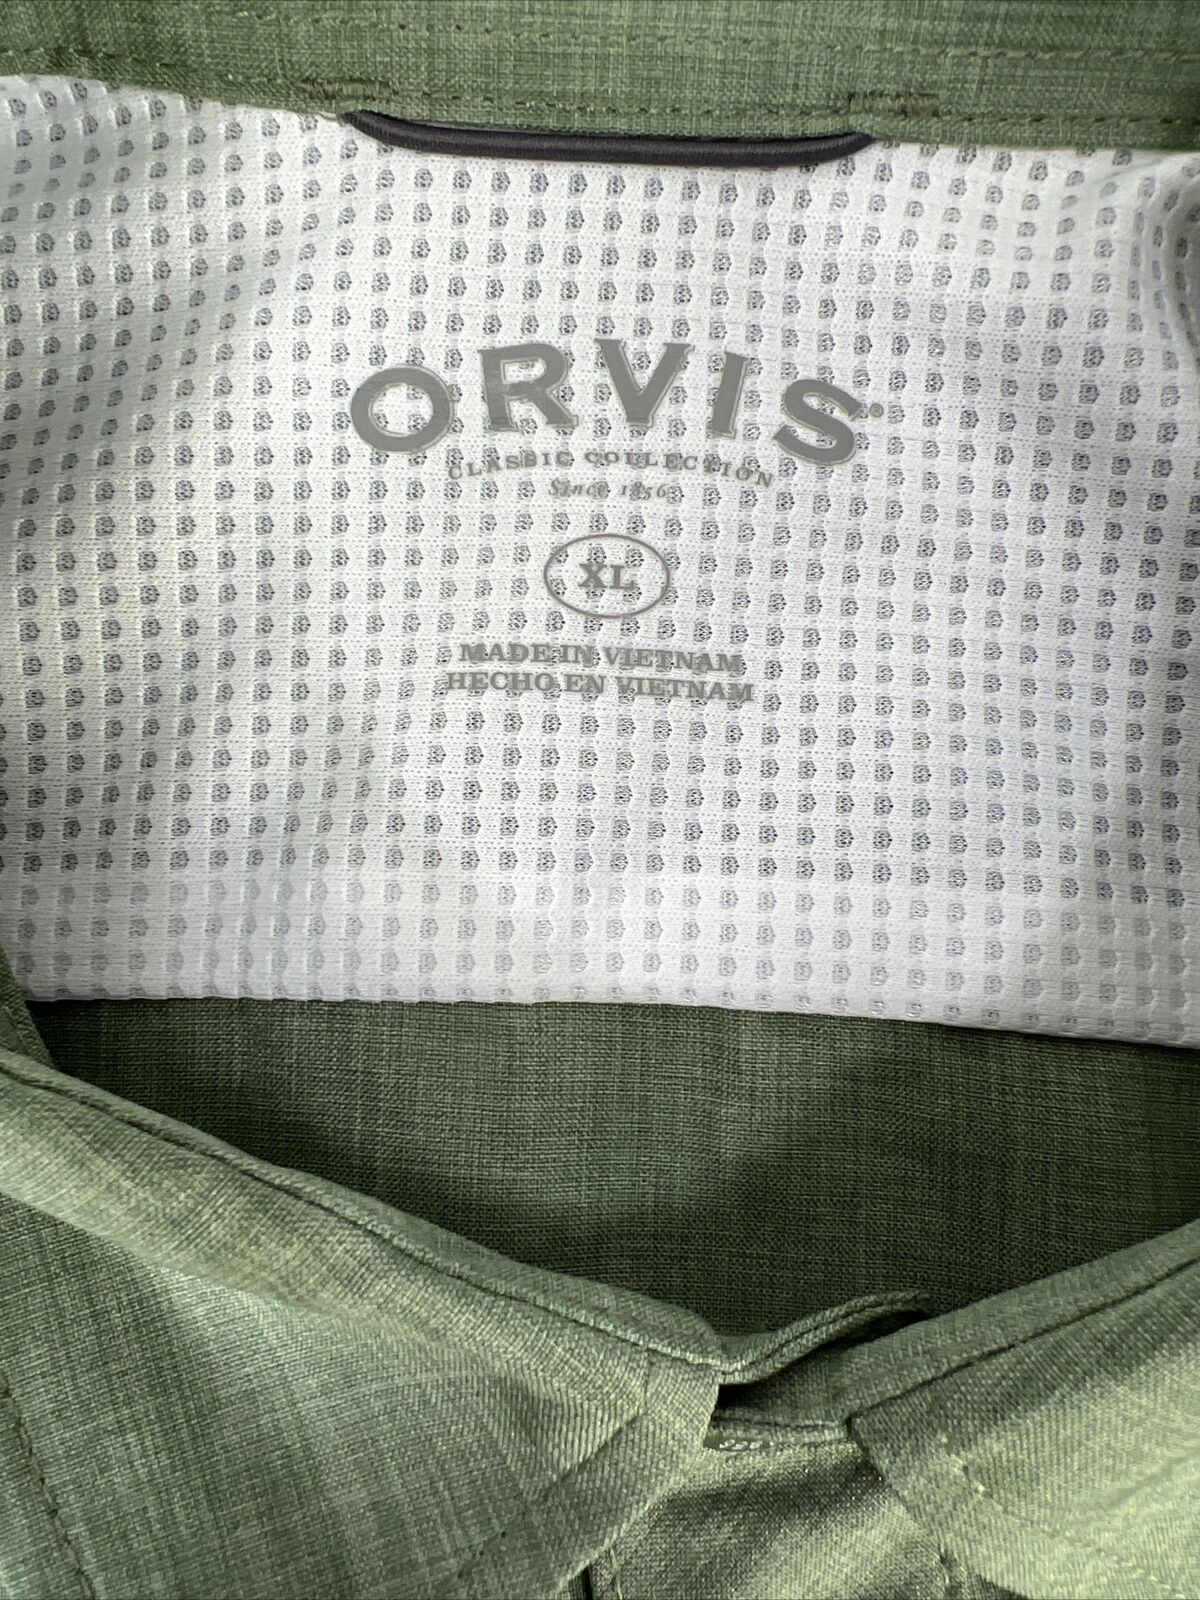 Orvis Men's Green Short Sleeve Button Up Casual Shirt - XL